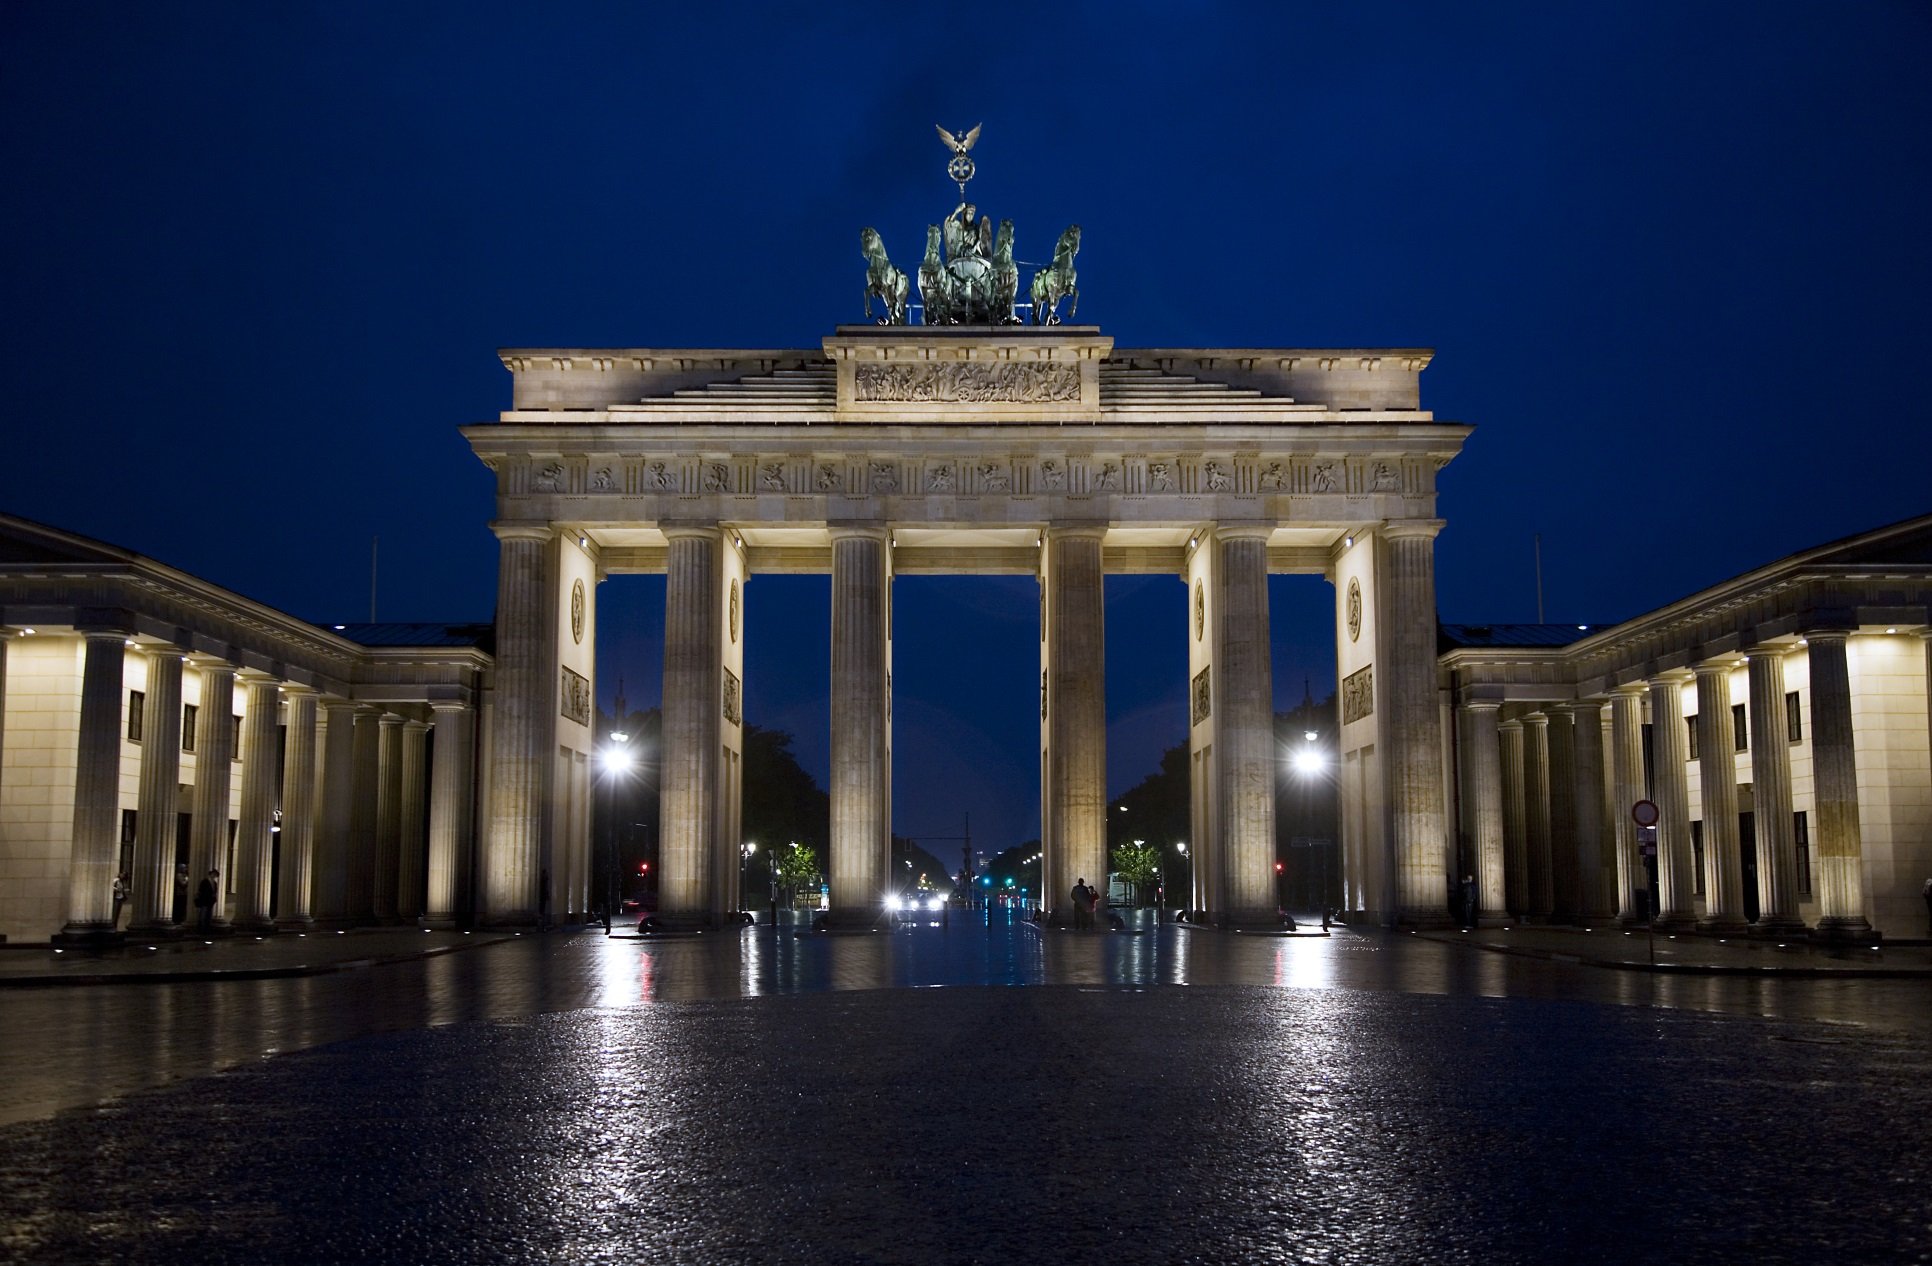 El diario de Berlín, demoledor: "Es justicia como en tiempos de Franco"